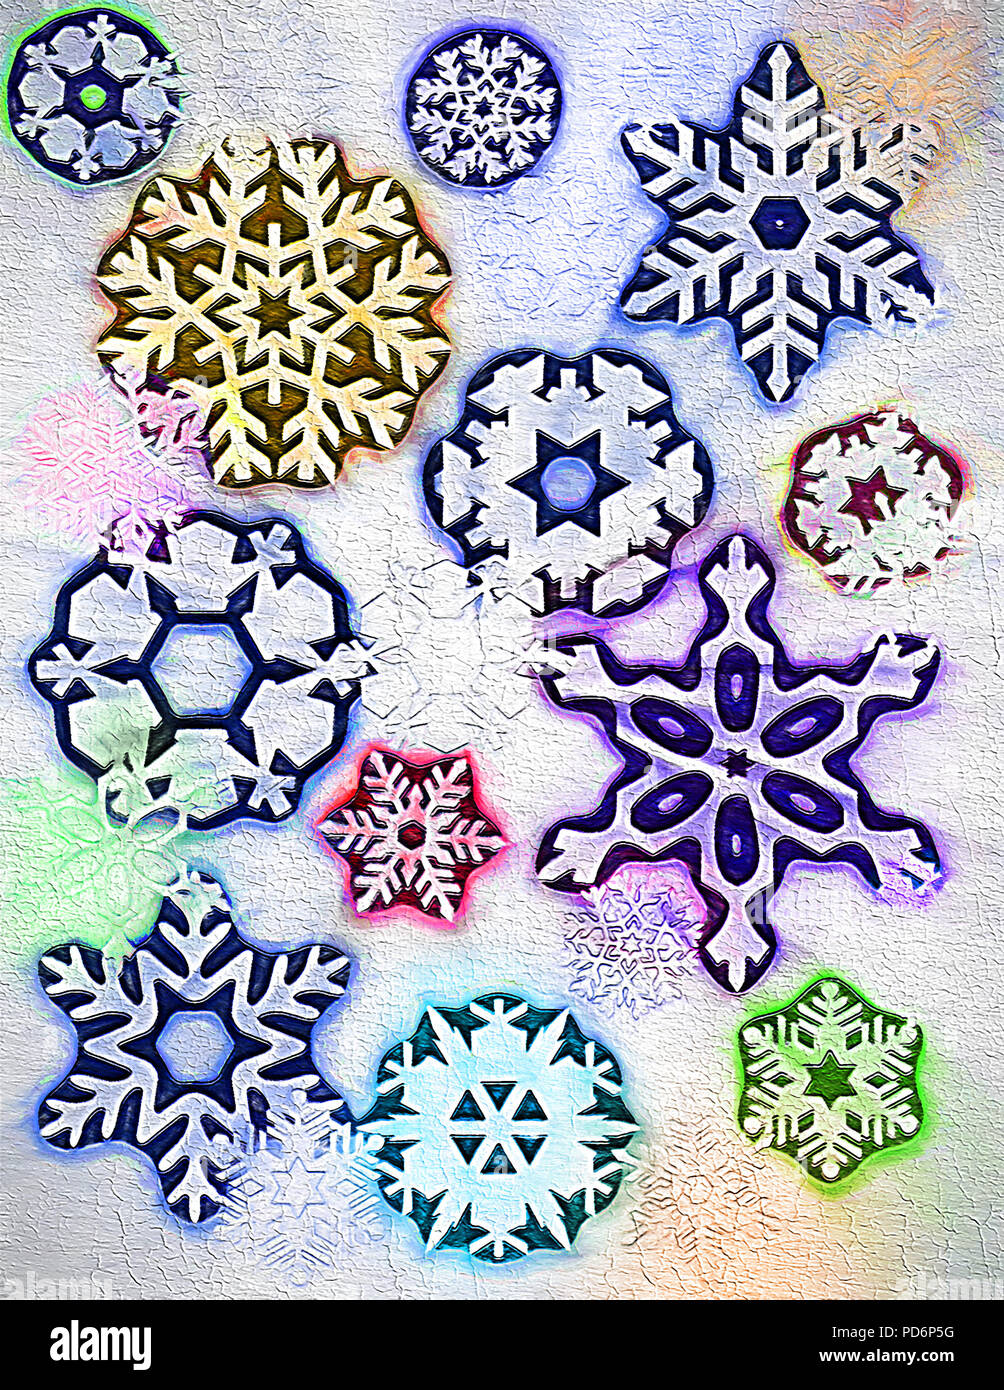 Devo ammettere che ho utilizzato alcuni royalty-free clip art in digitale questo pezzo di arte raffiguranti i fiocchi di neve e la stagione invernale. Composizione di colorazione, textu Foto Stock